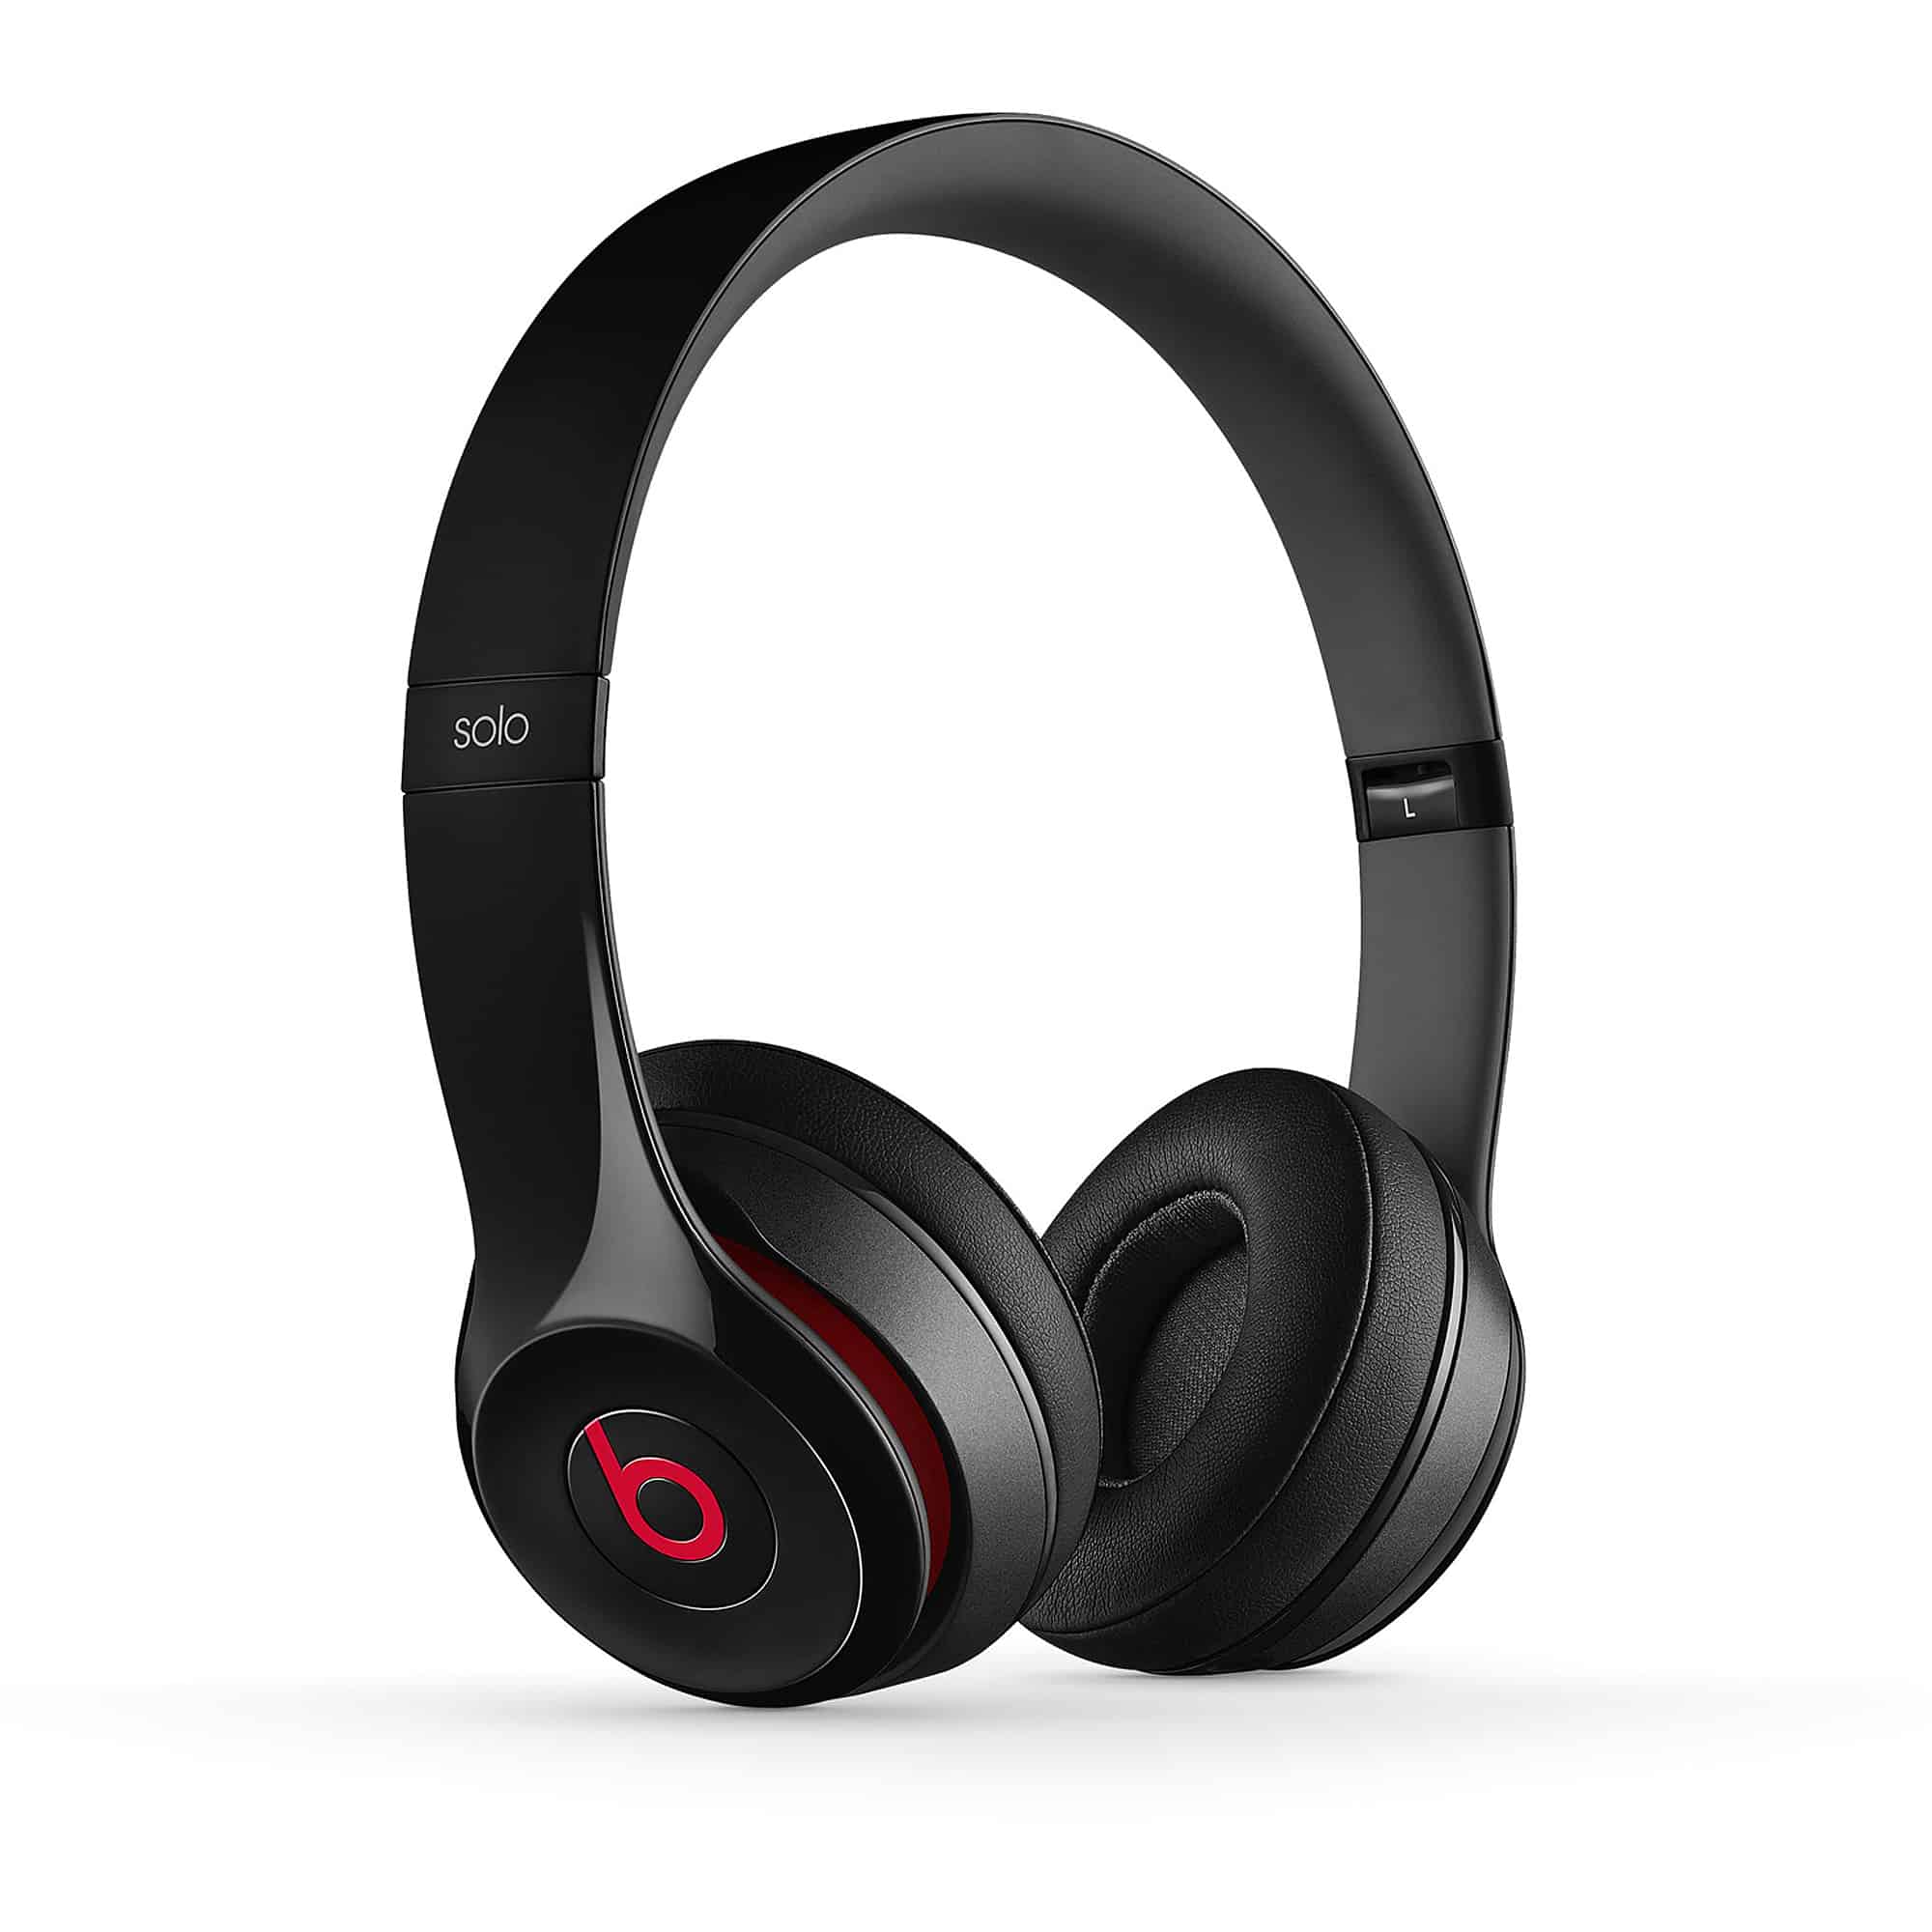 Updated Best Black Friday Headphones Deals Major HiFi